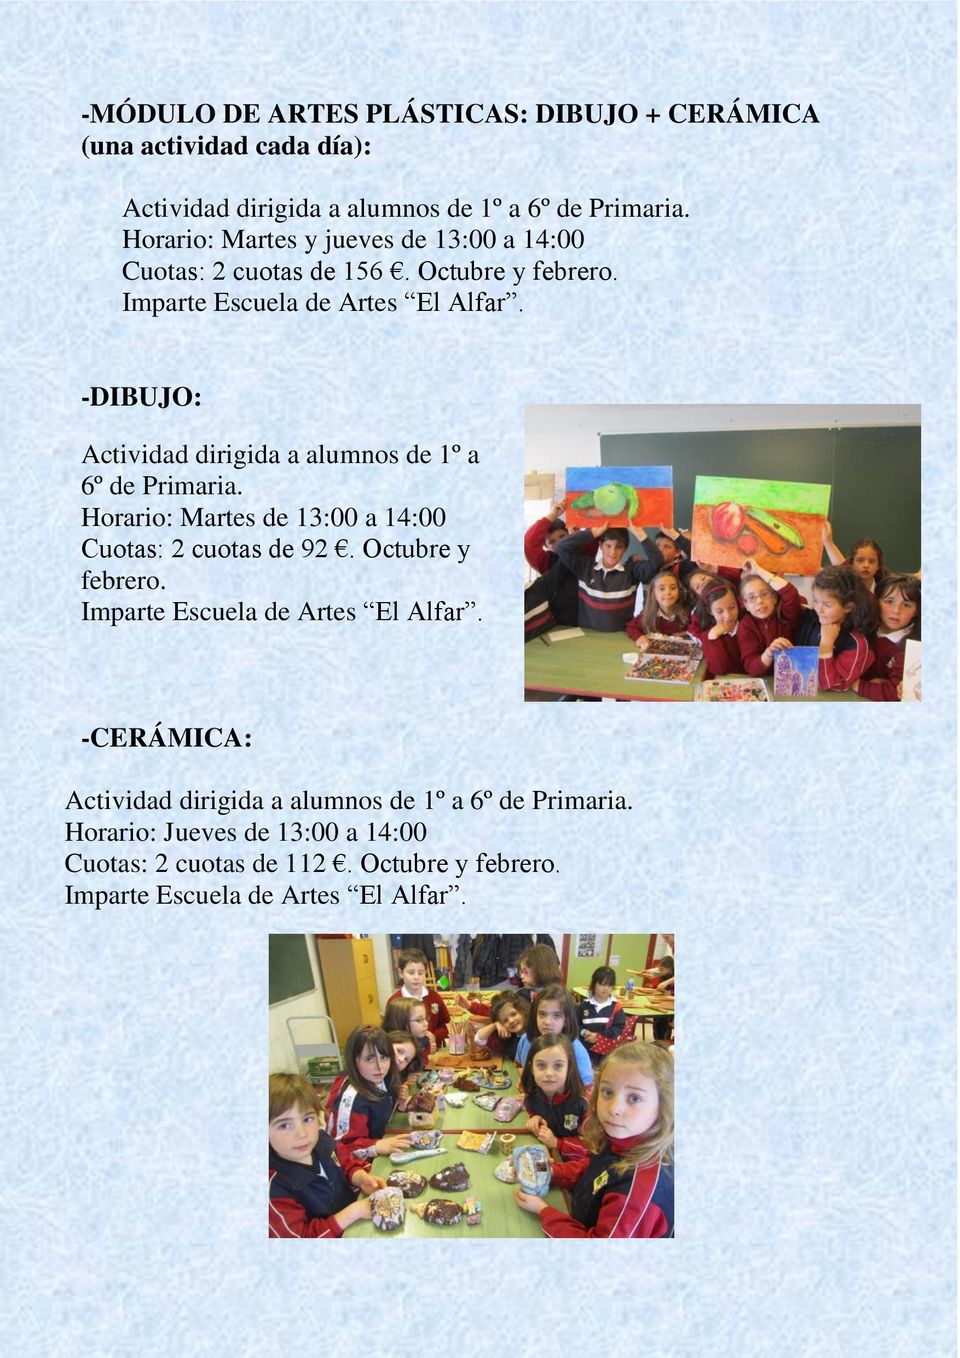 -DIBUJO: Actividad dirigida a alumnos de 1º a 6º de Primaria. Horario: Martes de 13:00 a 14:00 Cuotas: 2 cuotas de 92. Octubre y febrero.